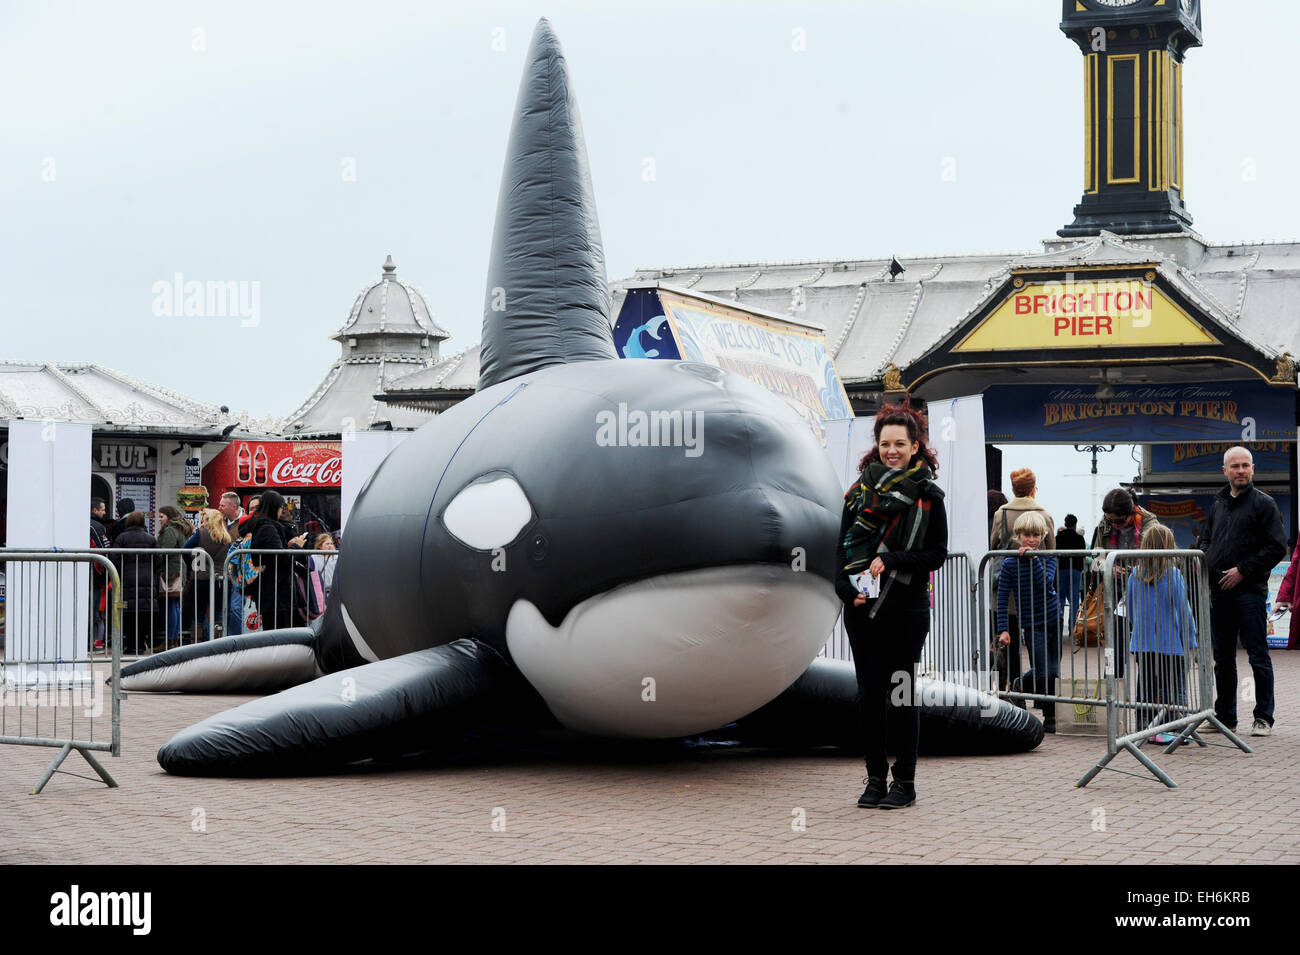 Inflatable whale -Fotos und -Bildmaterial in hoher Auflösung - Seite 3 -  Alamy